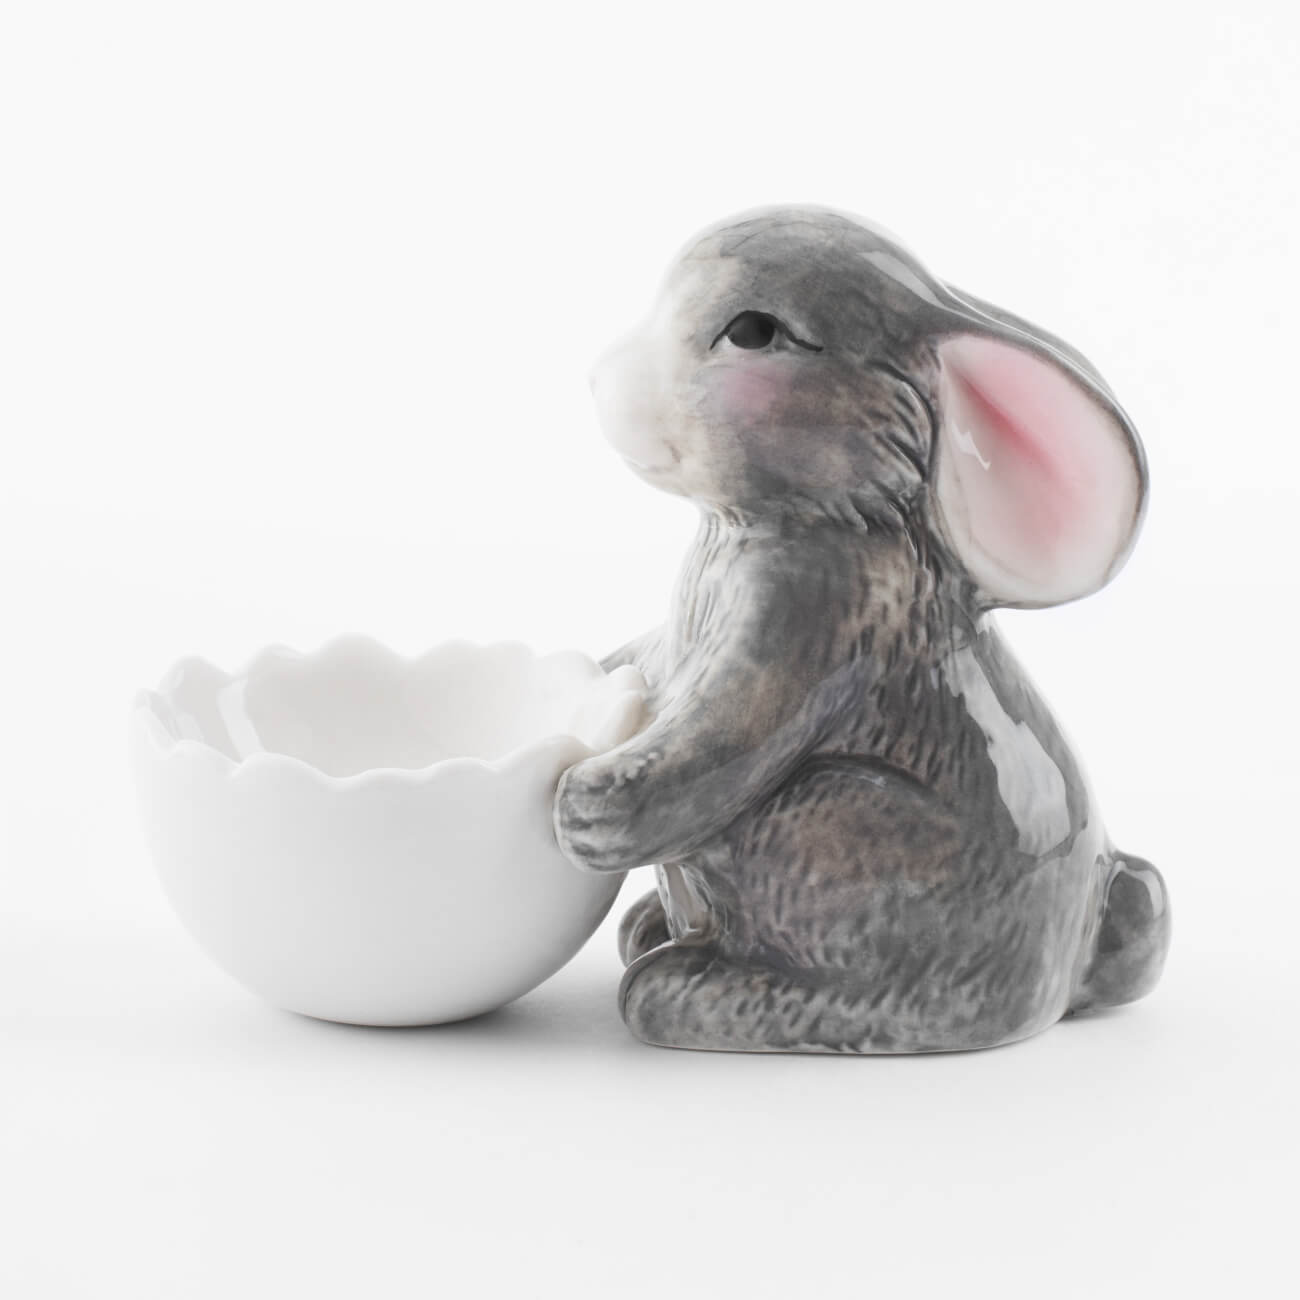 Подставка для яйца, 11 см, фарфор P, бело-серая, Кролик со скорлупой, Pure Easter подставка салфетница adelica 21 5×15×7 5 см дуб